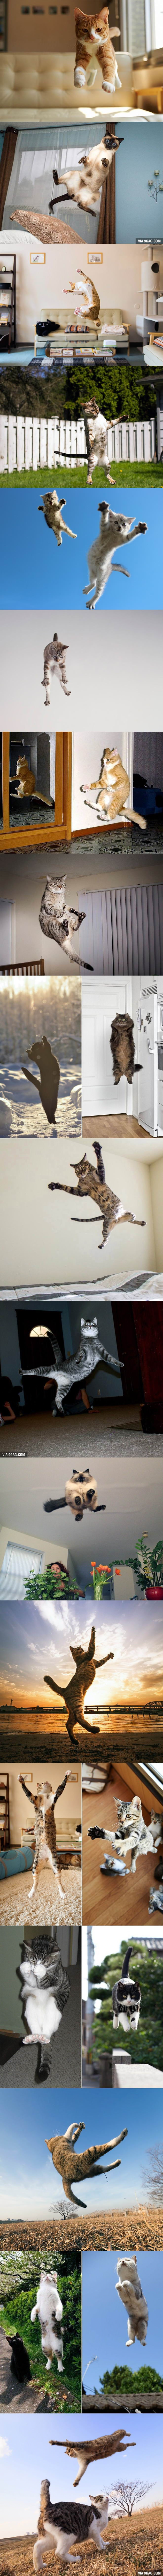 flying-cat